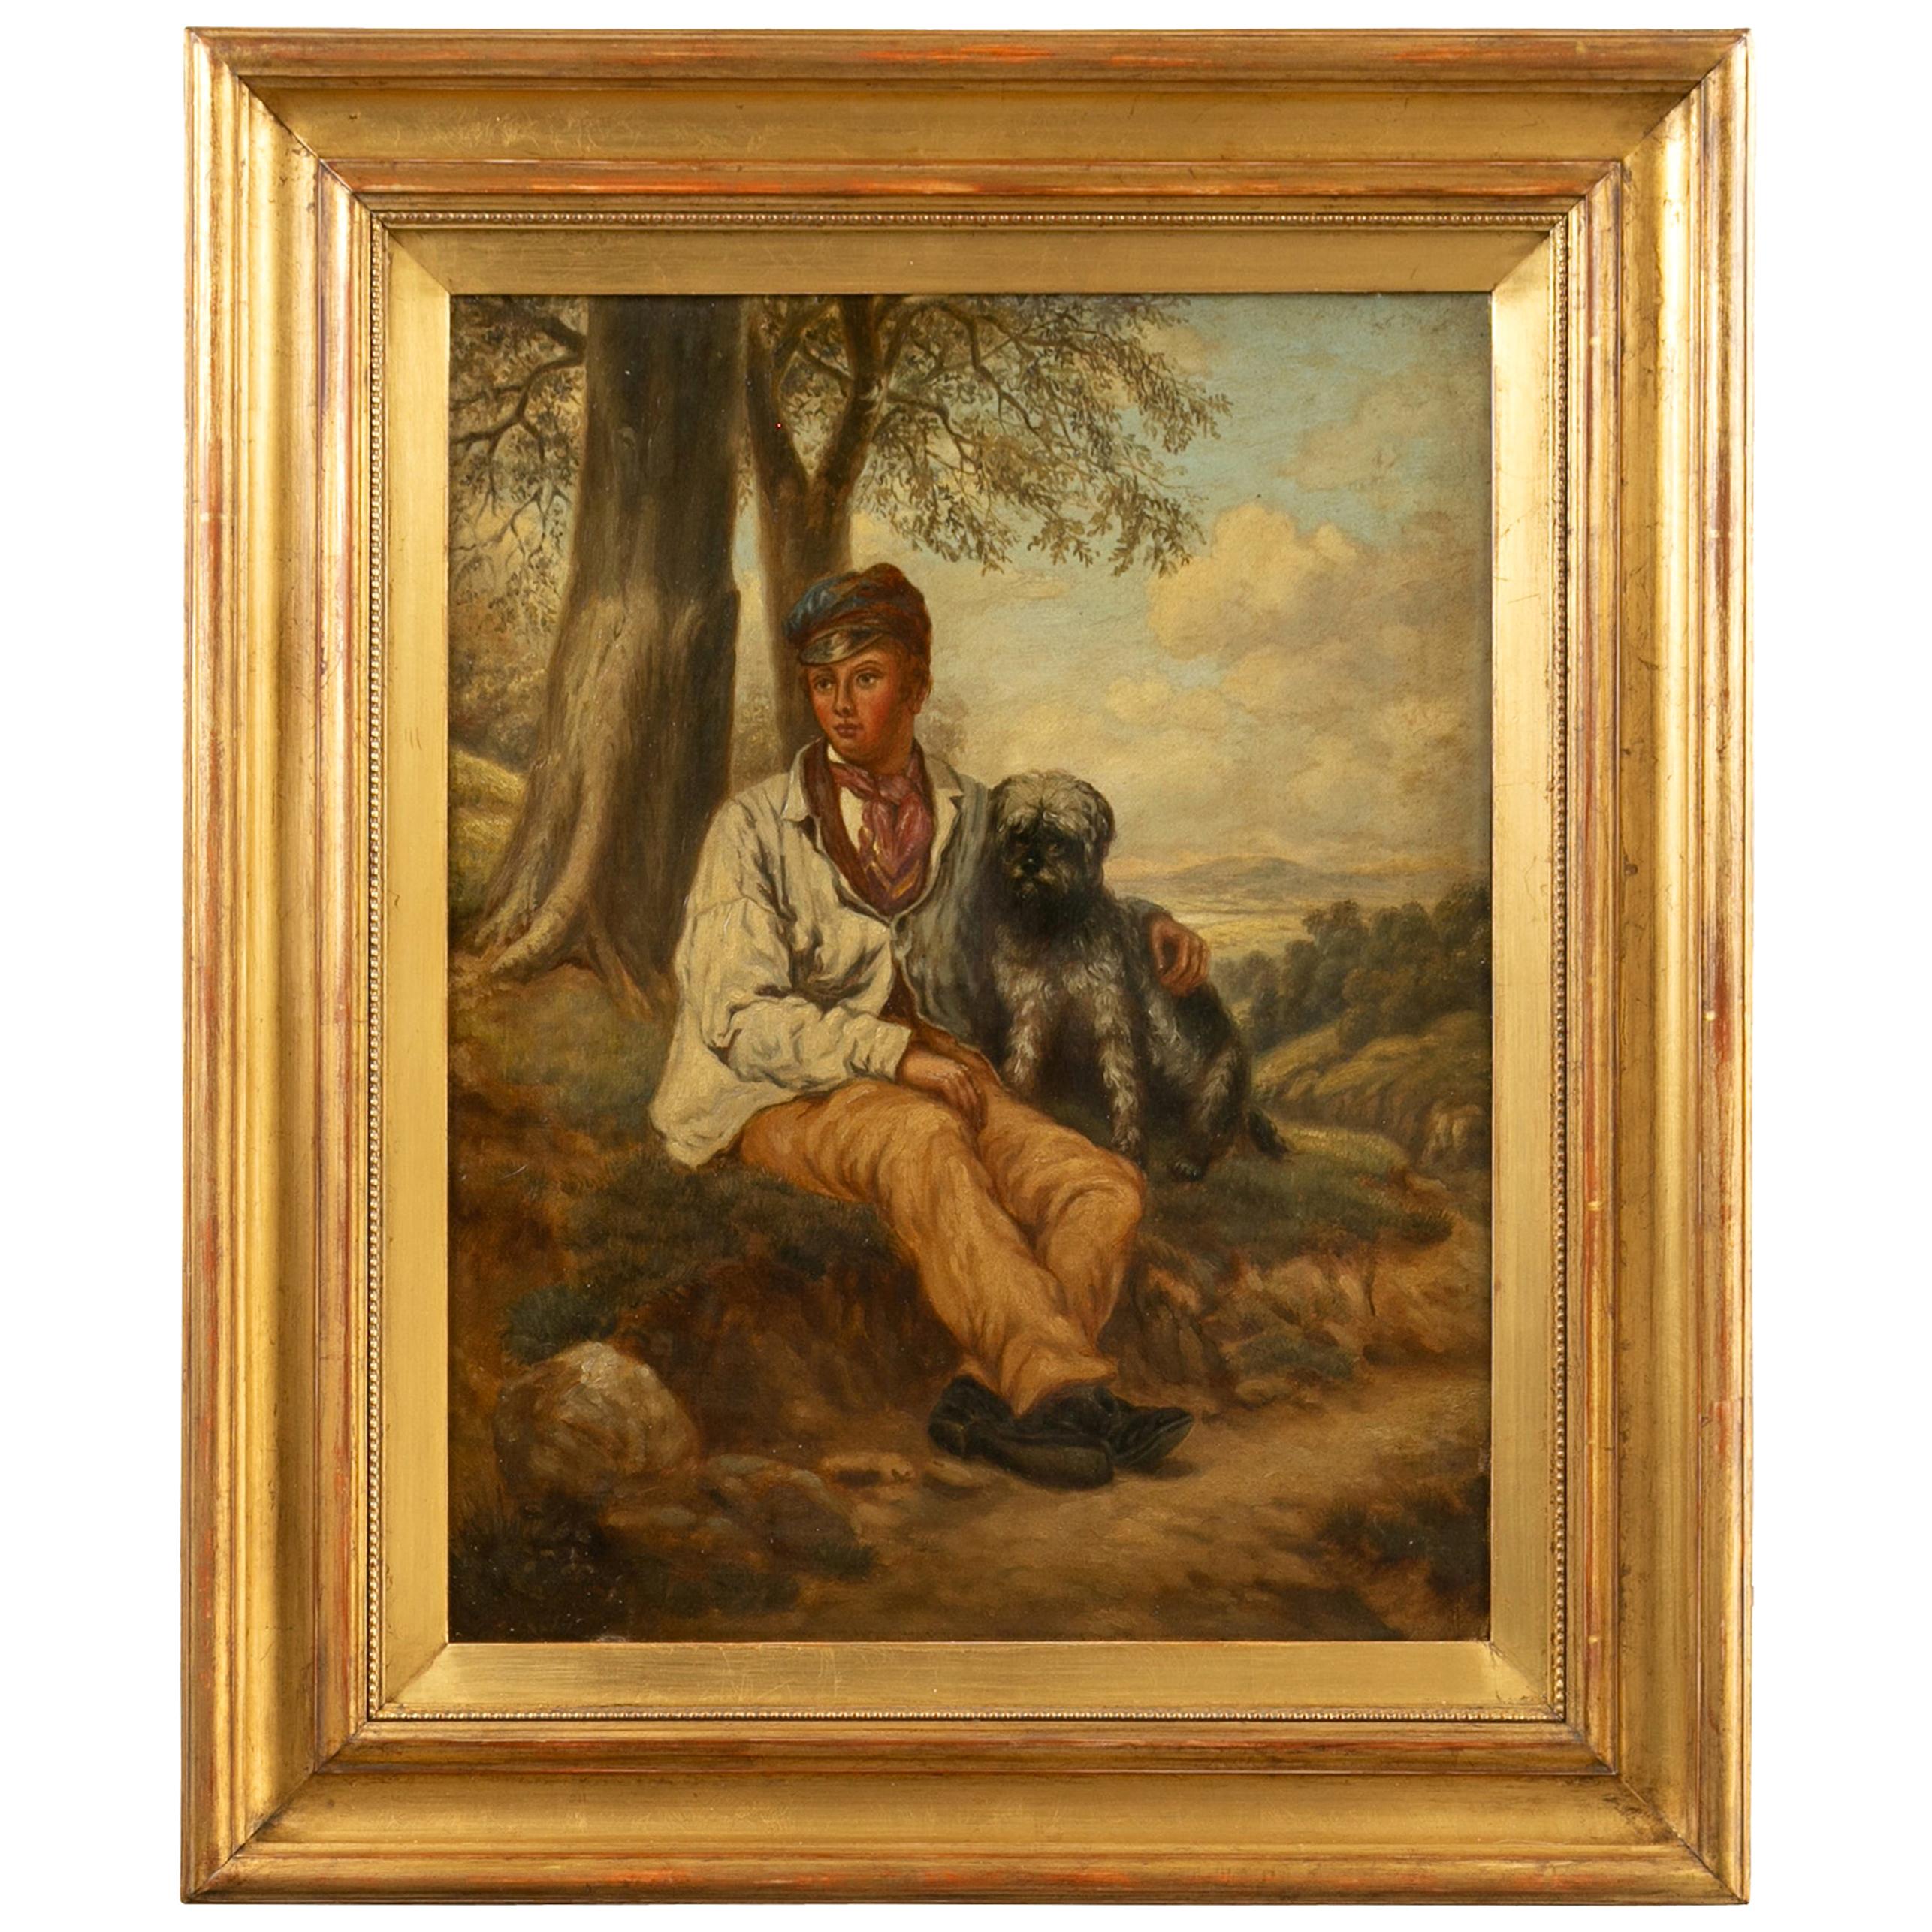 Englisch 1880s Öl auf Leinwand Gemälde eines Jungen mit seinem Hund in antiken vergoldeten Rahmen